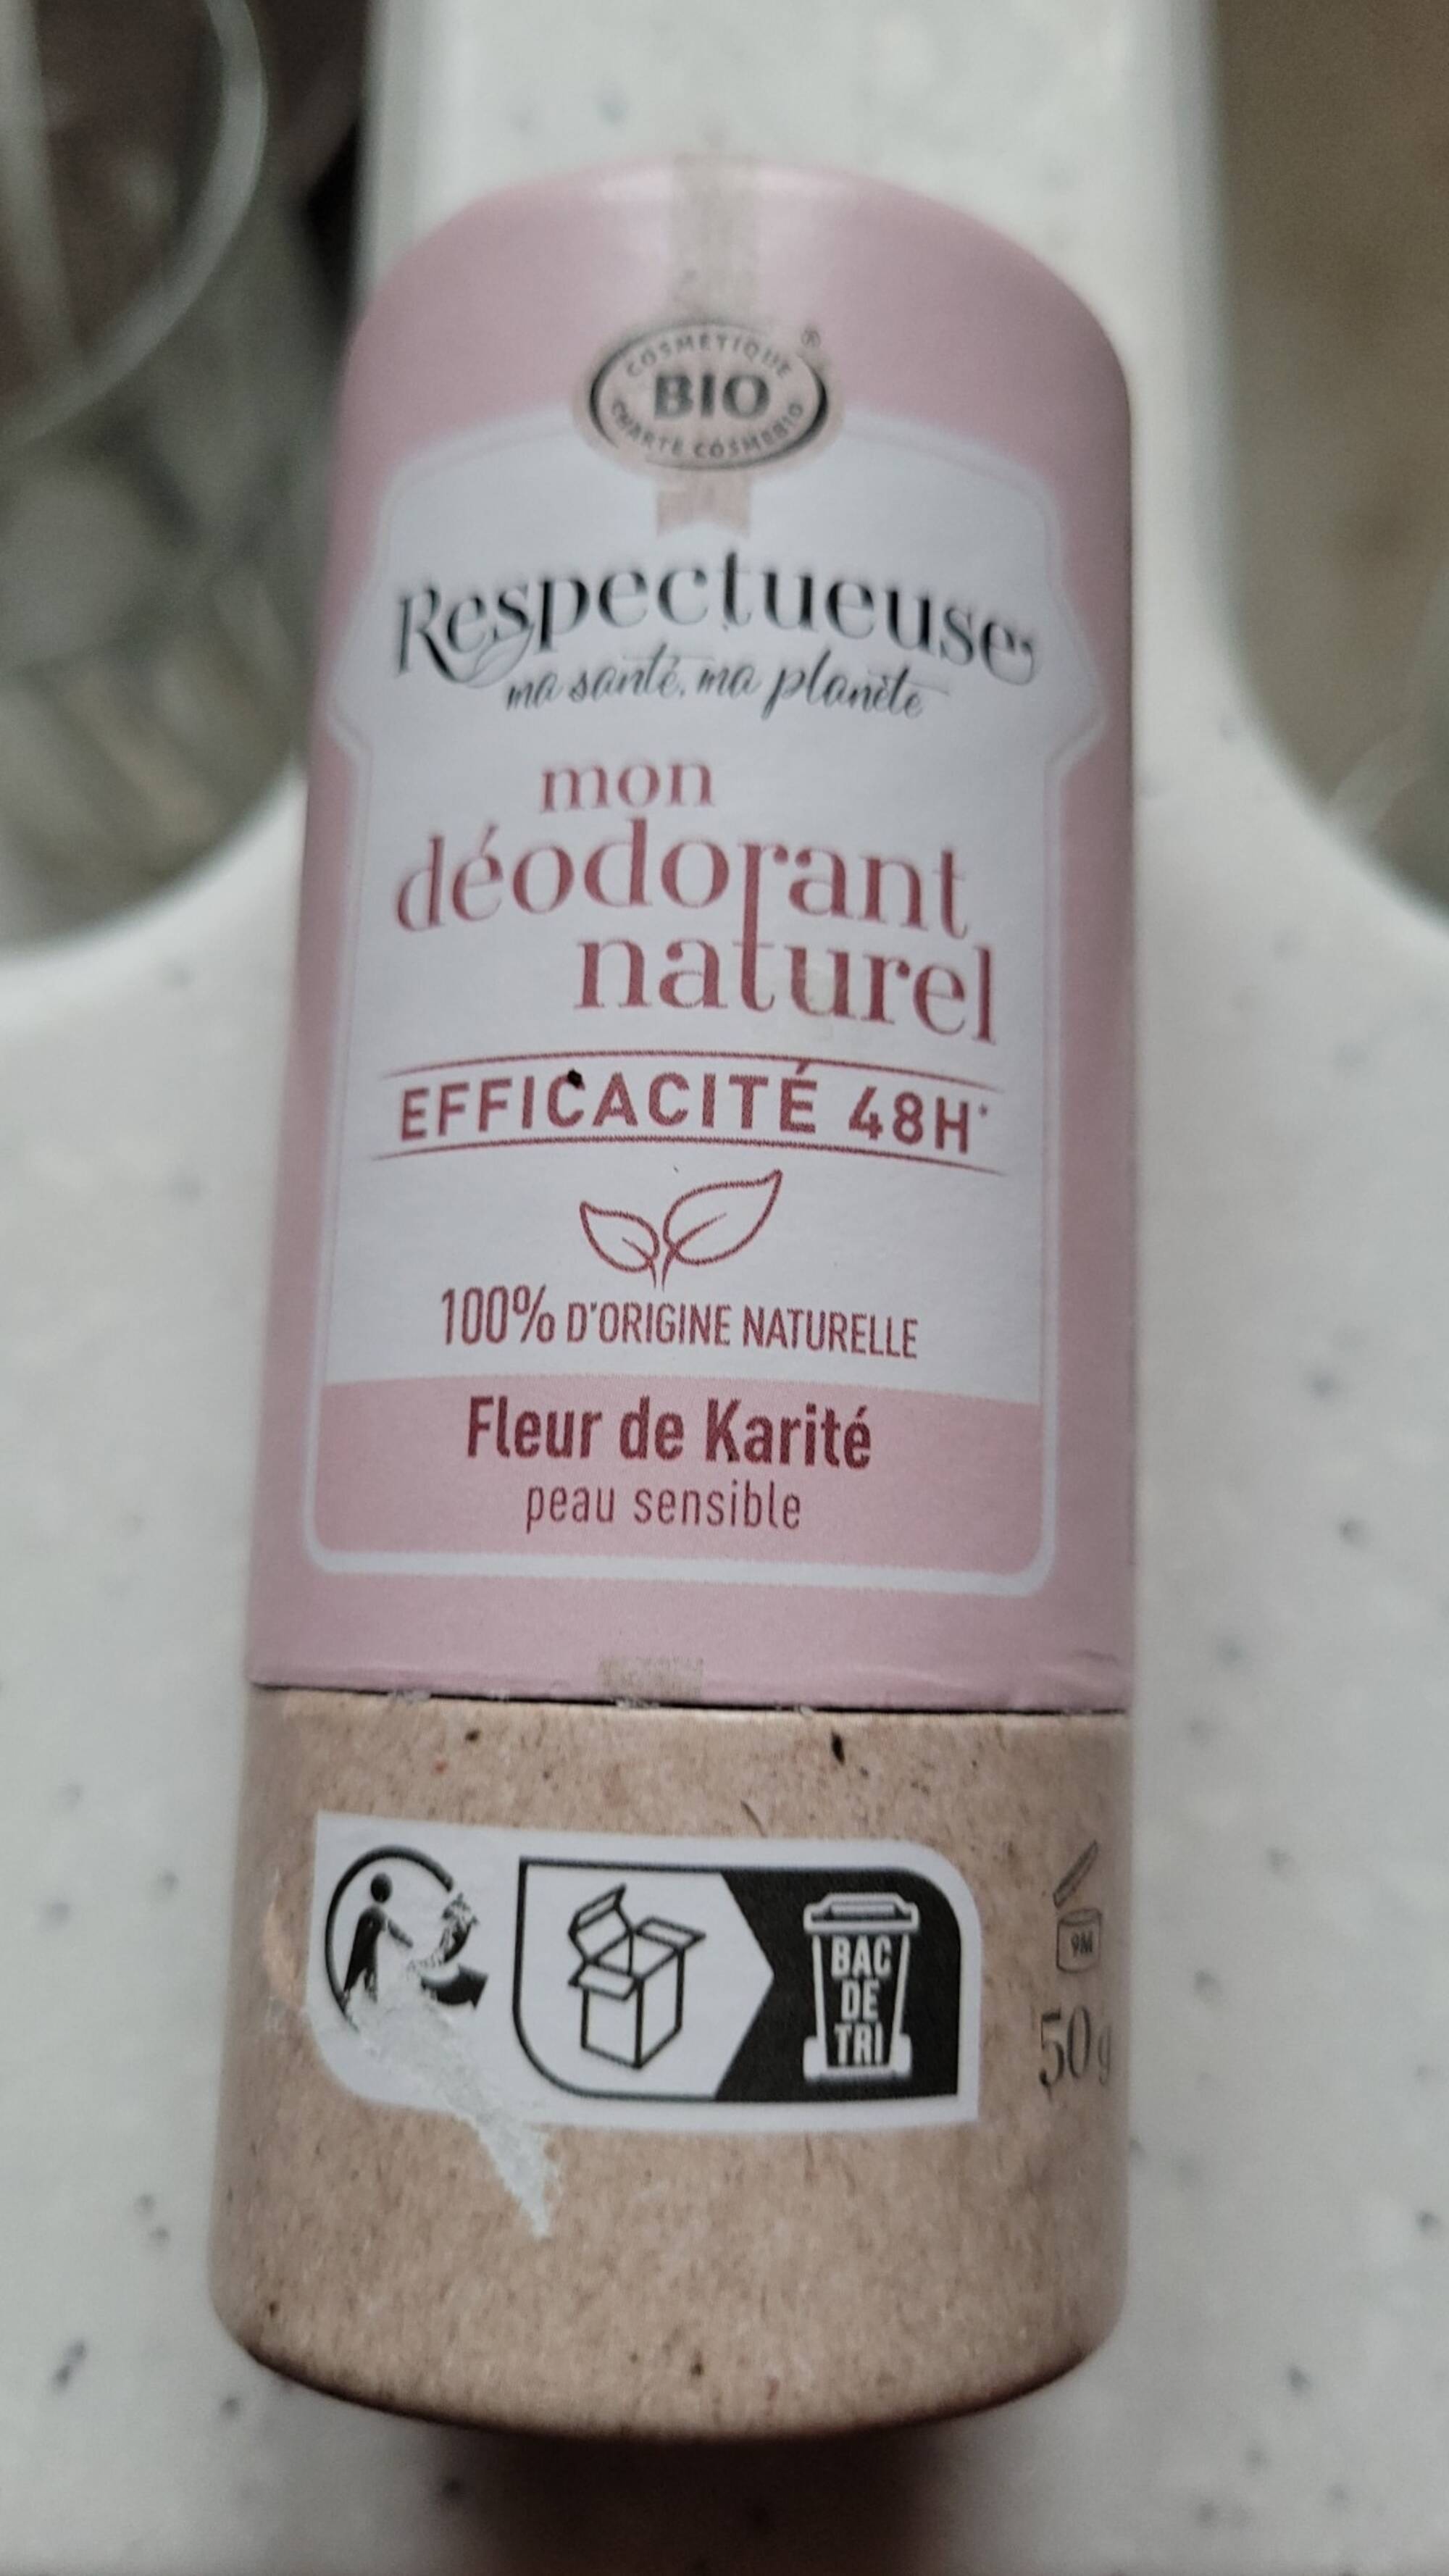 RESPECTUEUSE - Fleur de karité - Mon déodorant naturel 48h